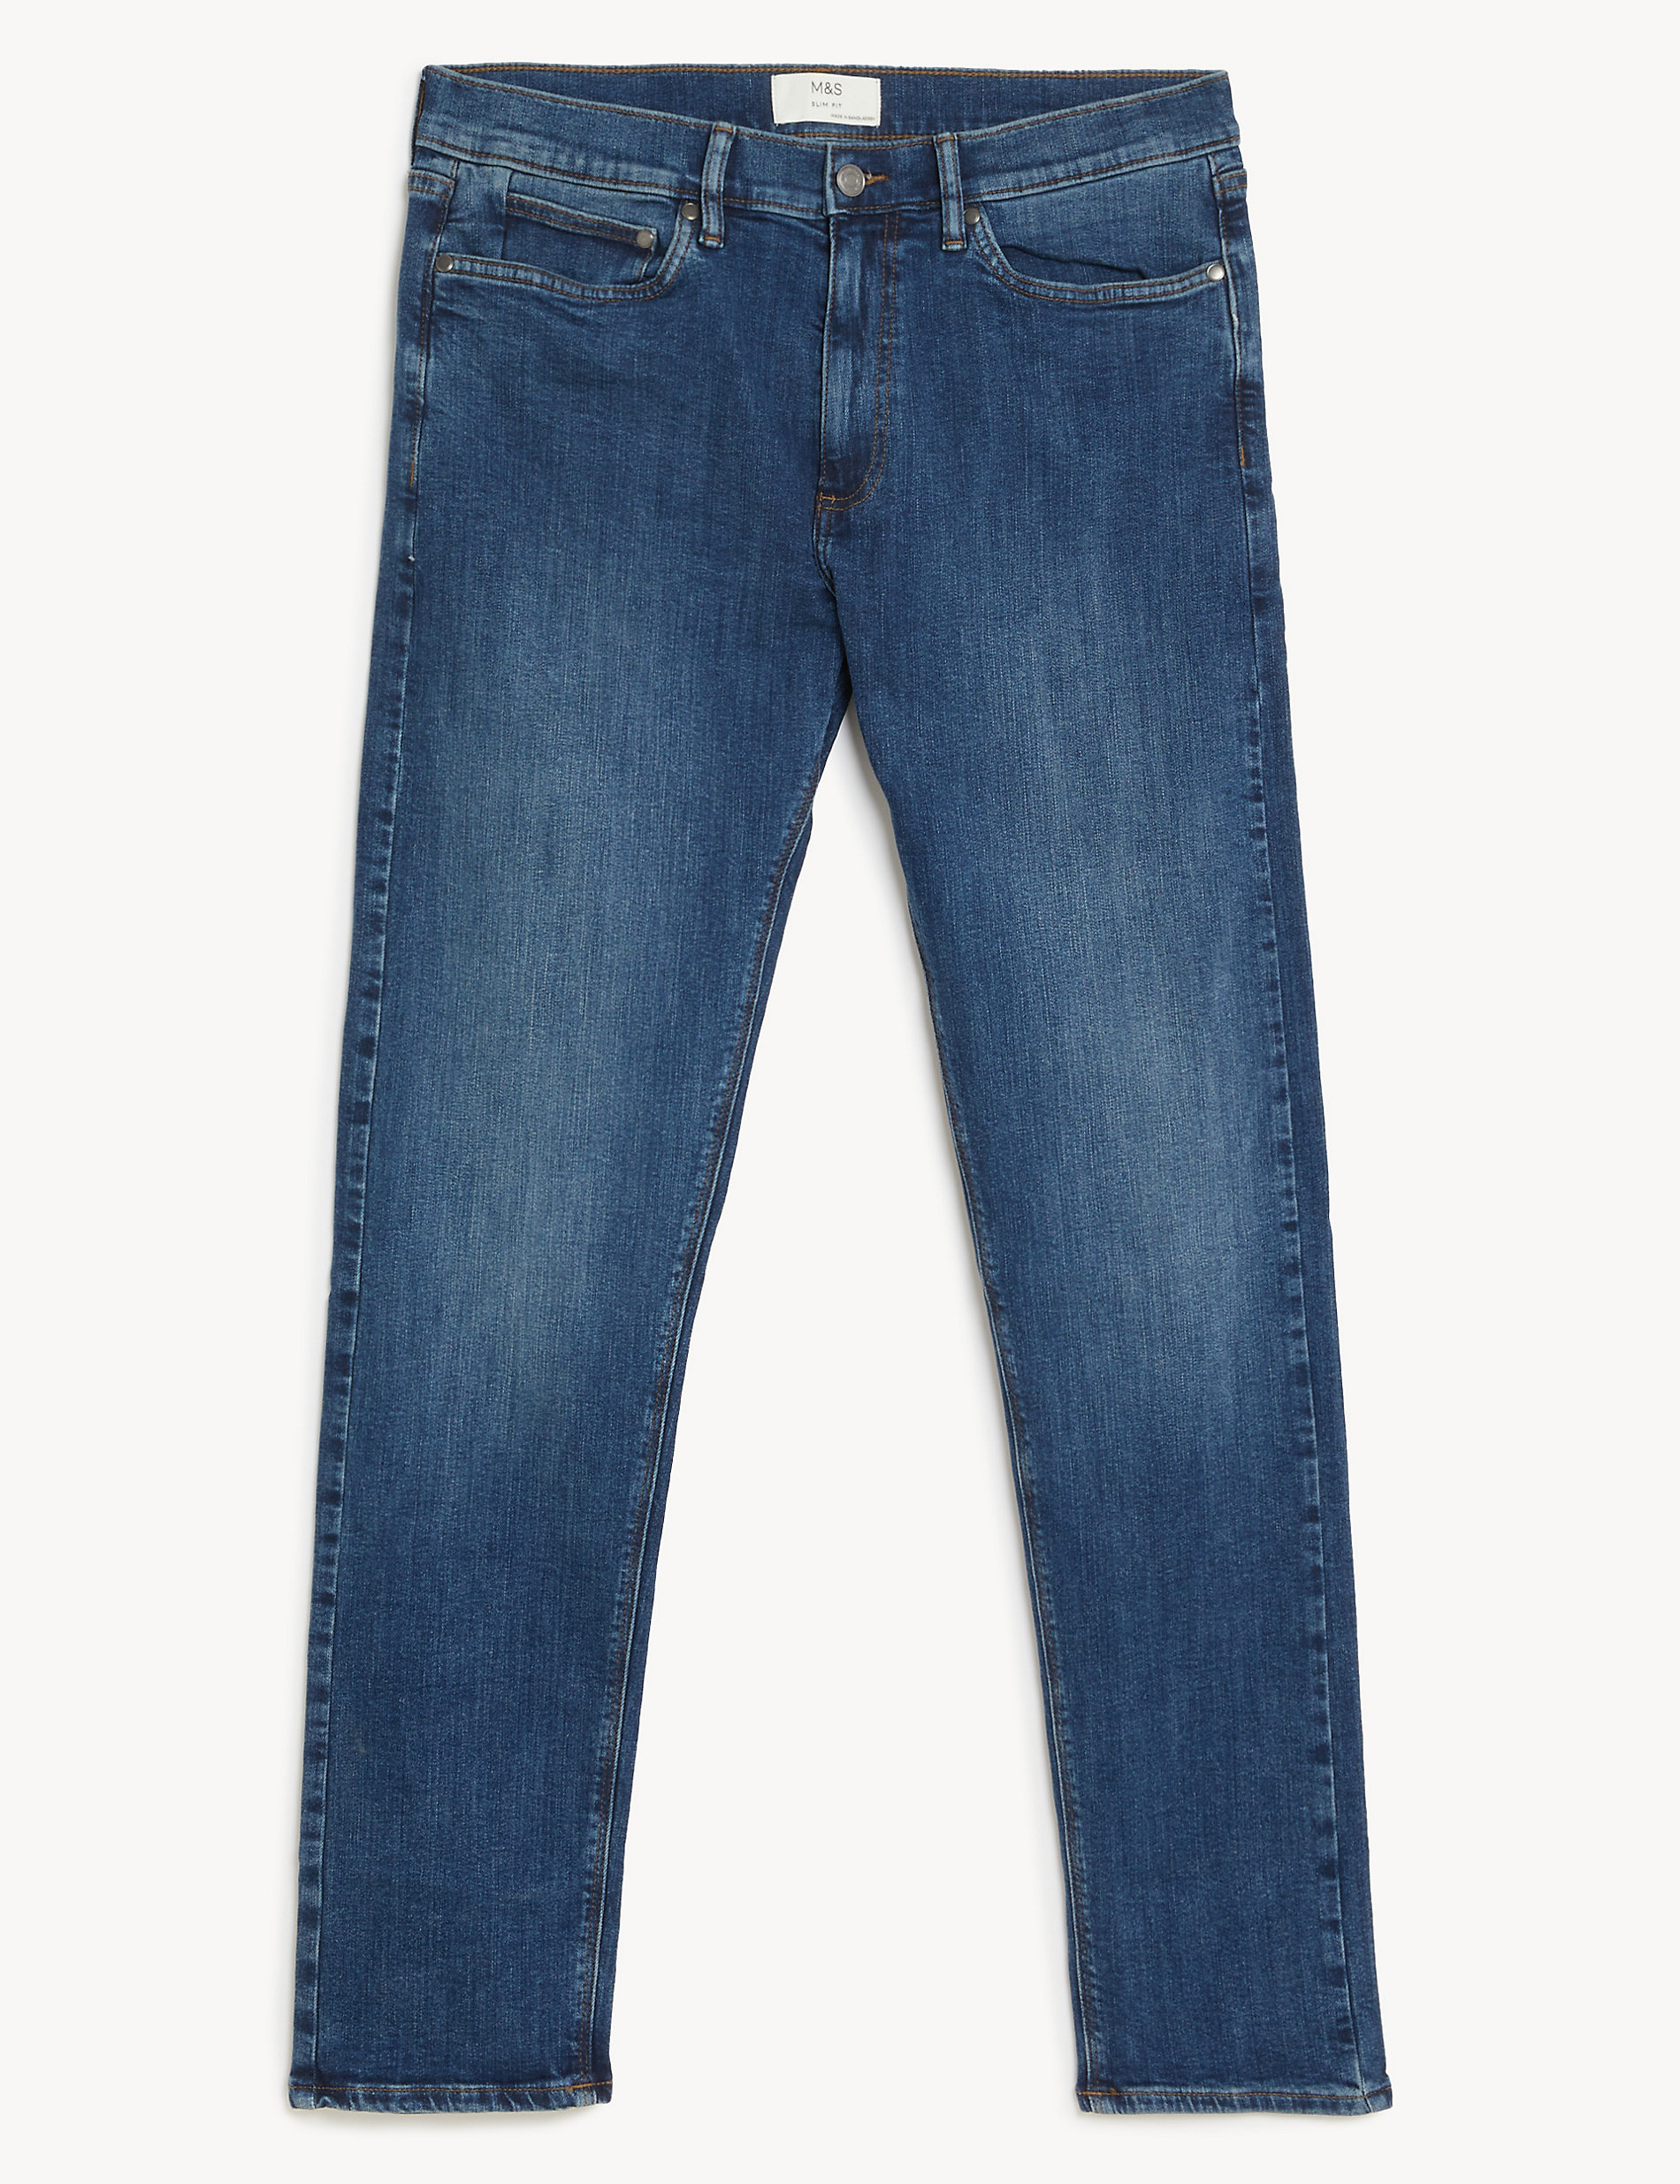 Jeans slim fit elásticos más cortos